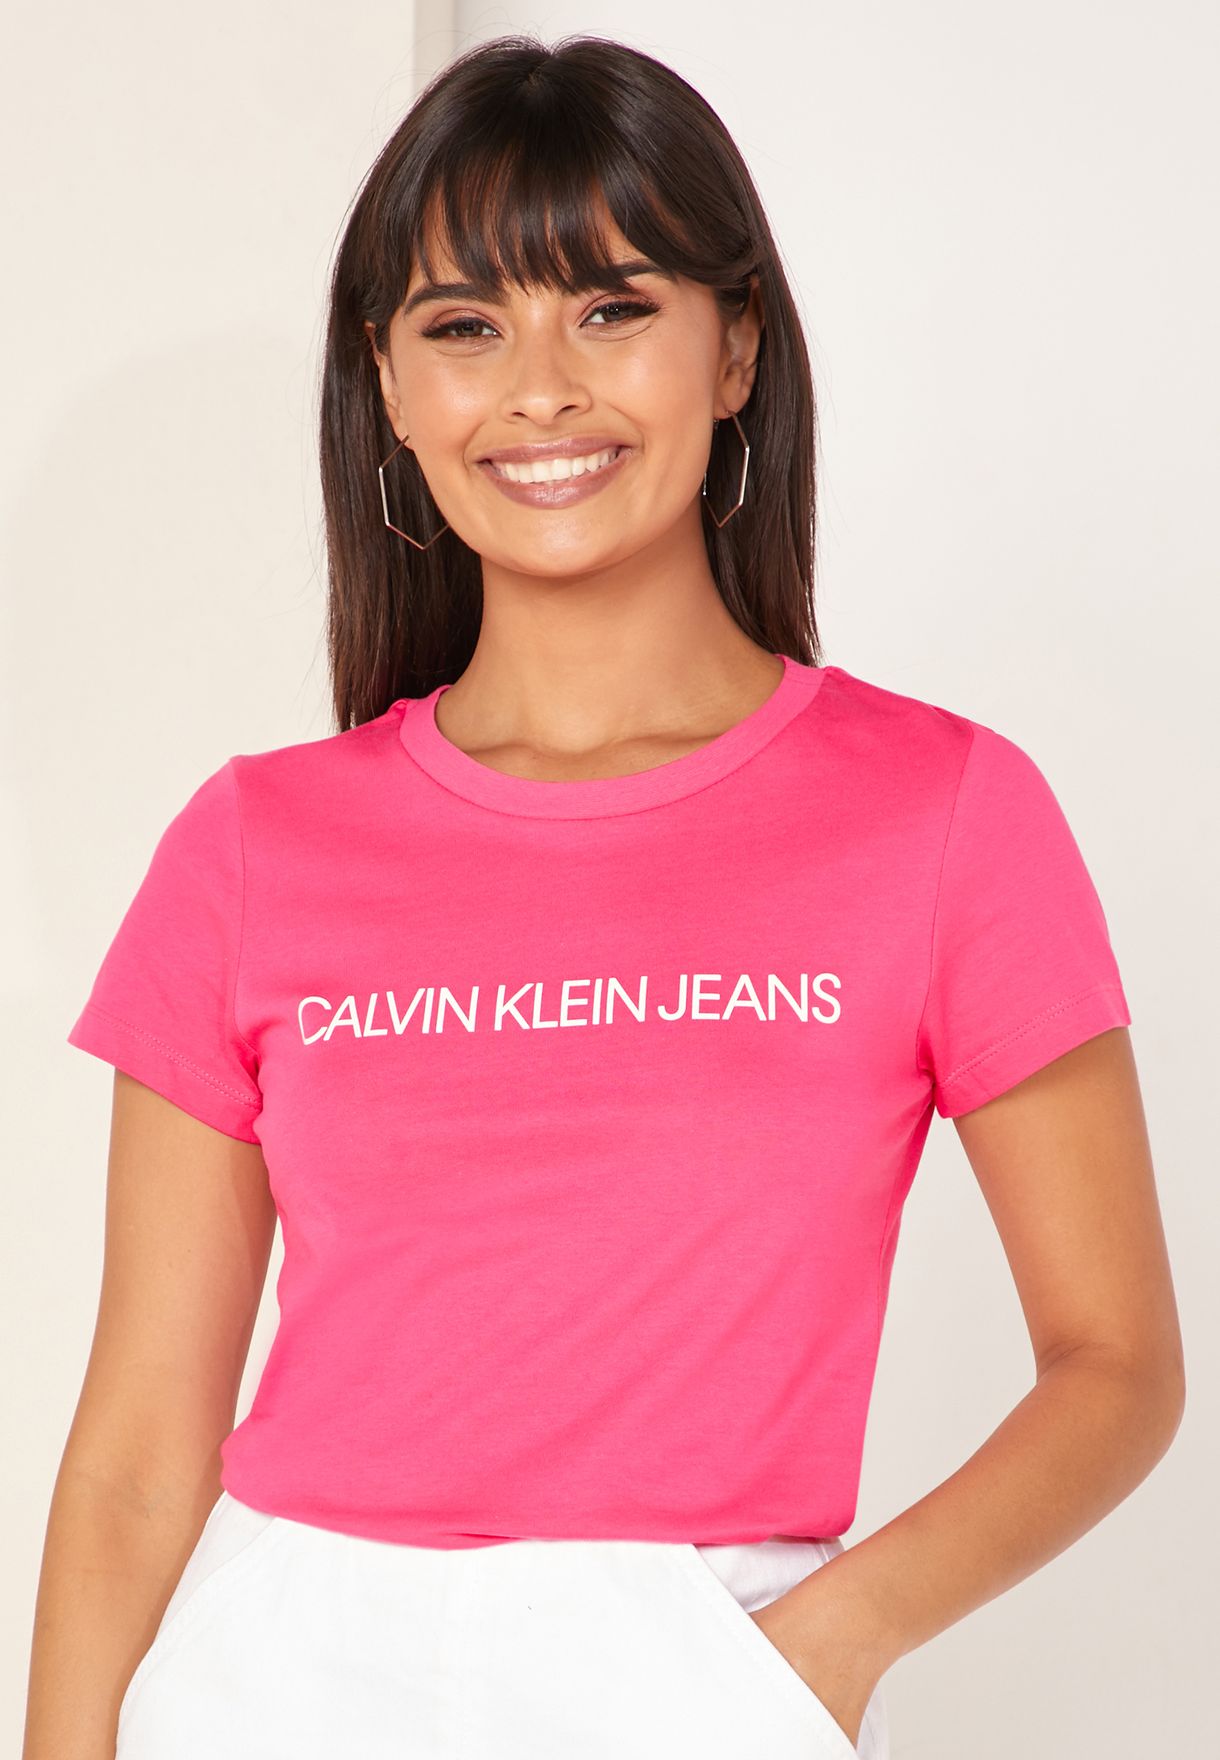 calvin klein jeans t shirt womens